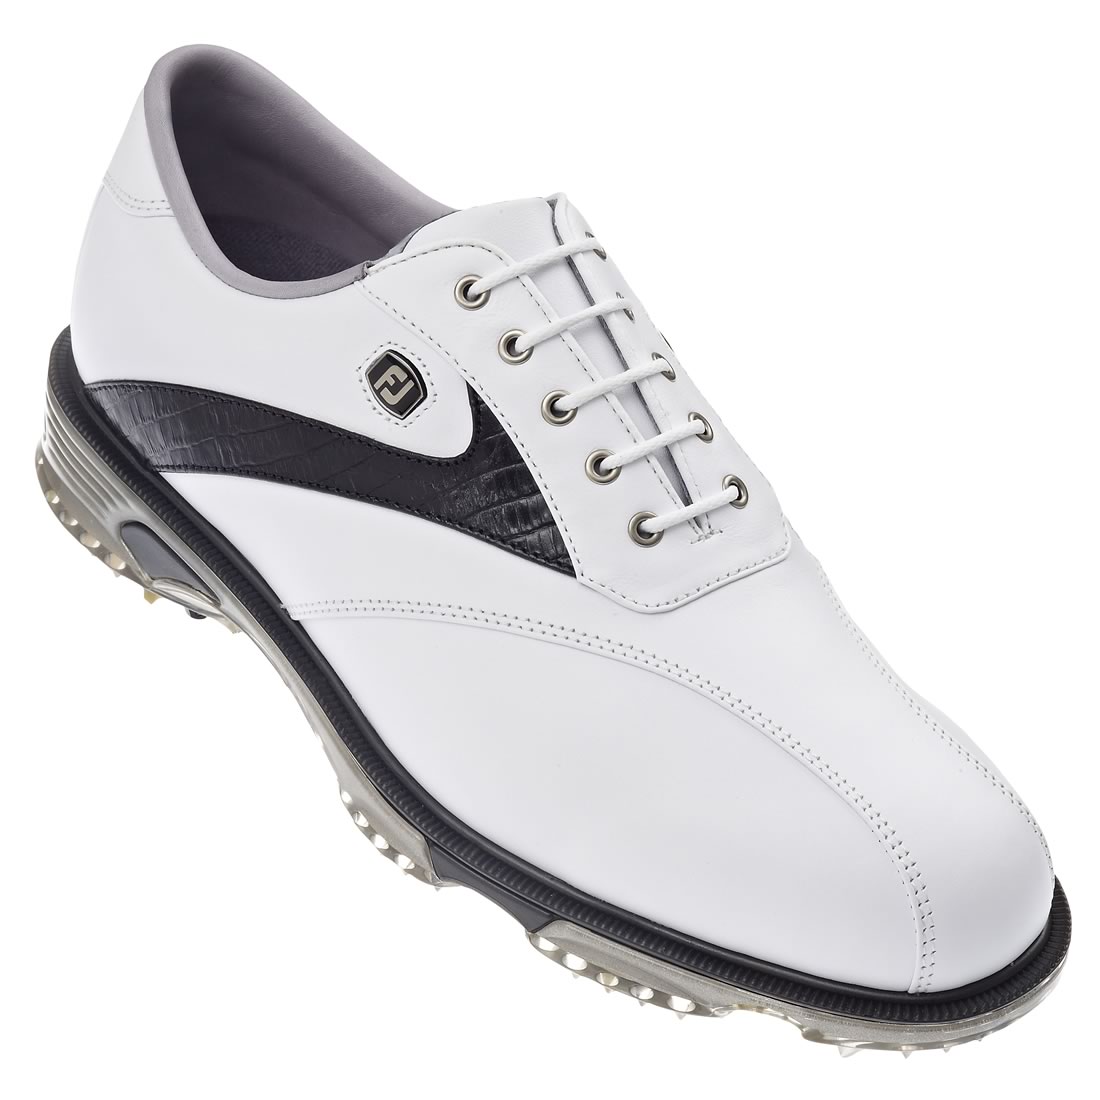 FootJoy Dryjoys Tour Golf Shoes White/Black #53694